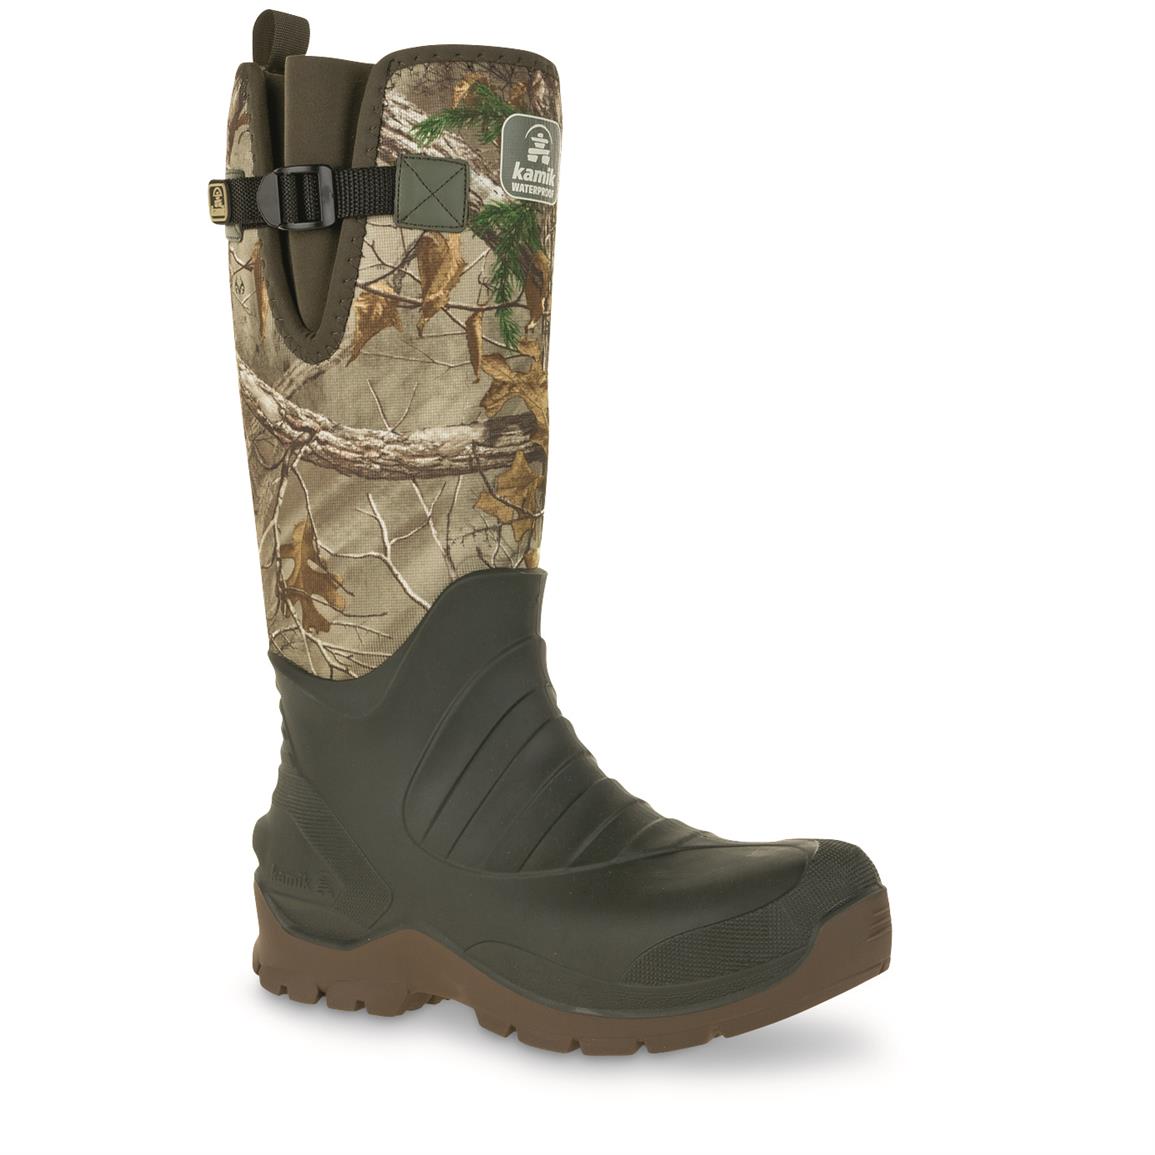 waterproof camo boots